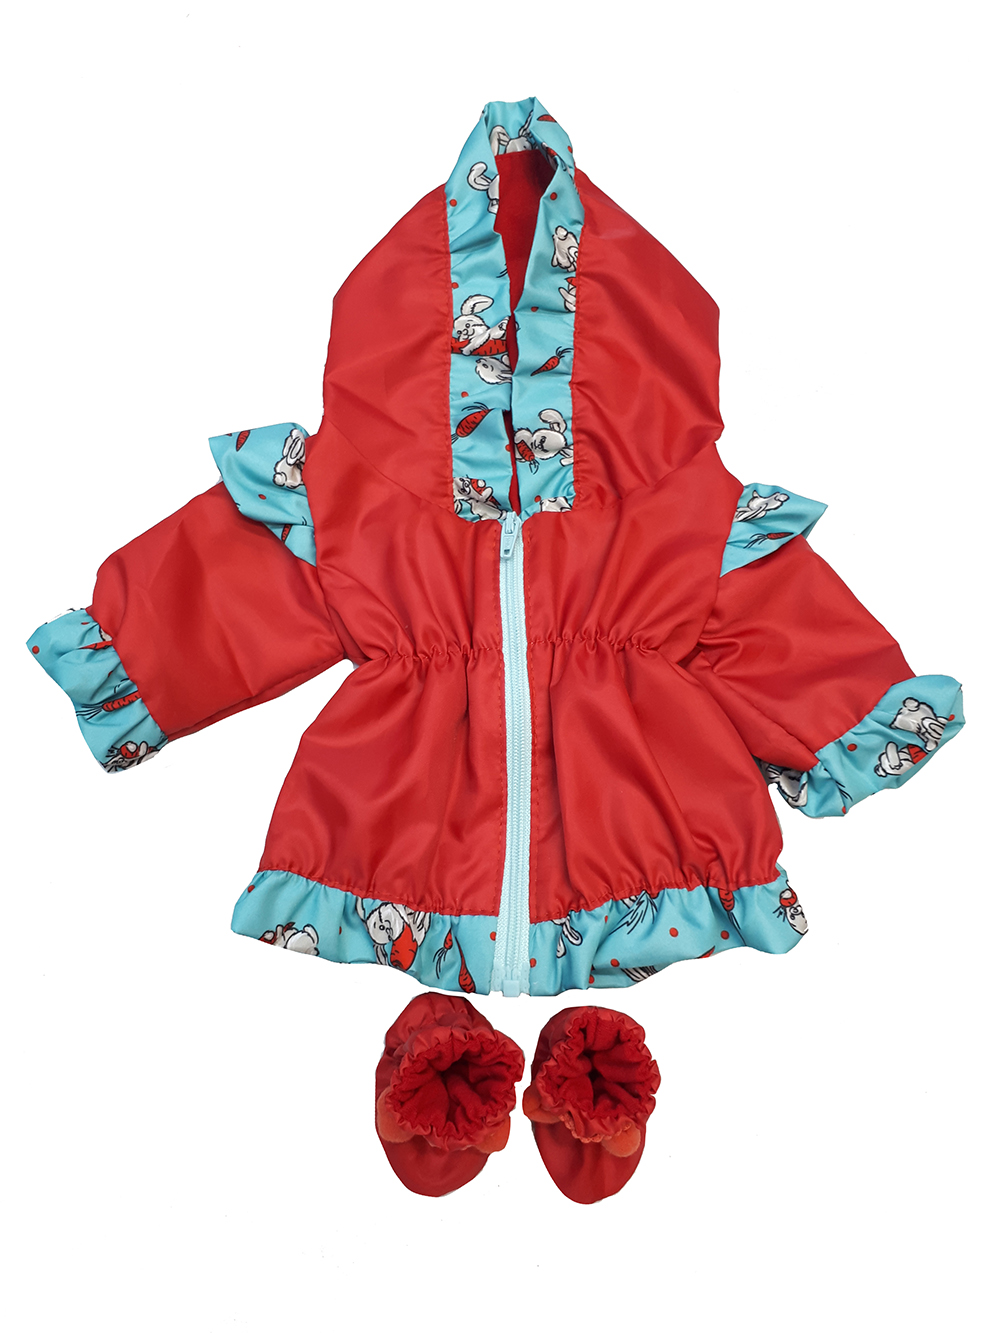 Курточка ветровка и сапоги Дутыши для куклы Колибри 93 Красный,бирюзовый